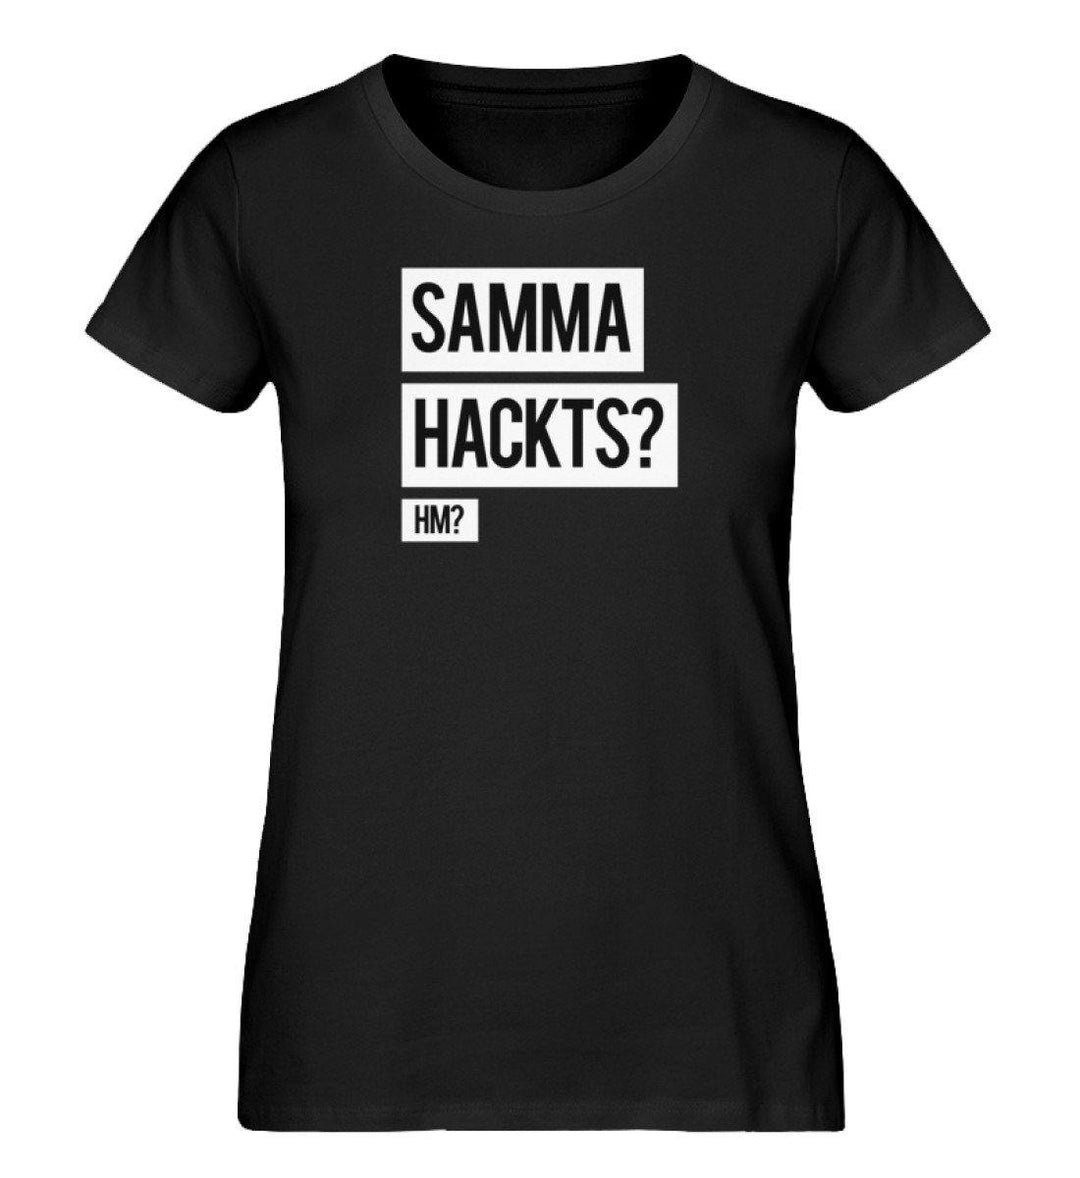 Samma Hackts? Hm? - Damen Premium Organic Shirt - Words on Shirts Sag es mit dem Mittelfinger Shirts Hoodies Sweatshirt Taschen Gymsack Spruch Sprüche Statement